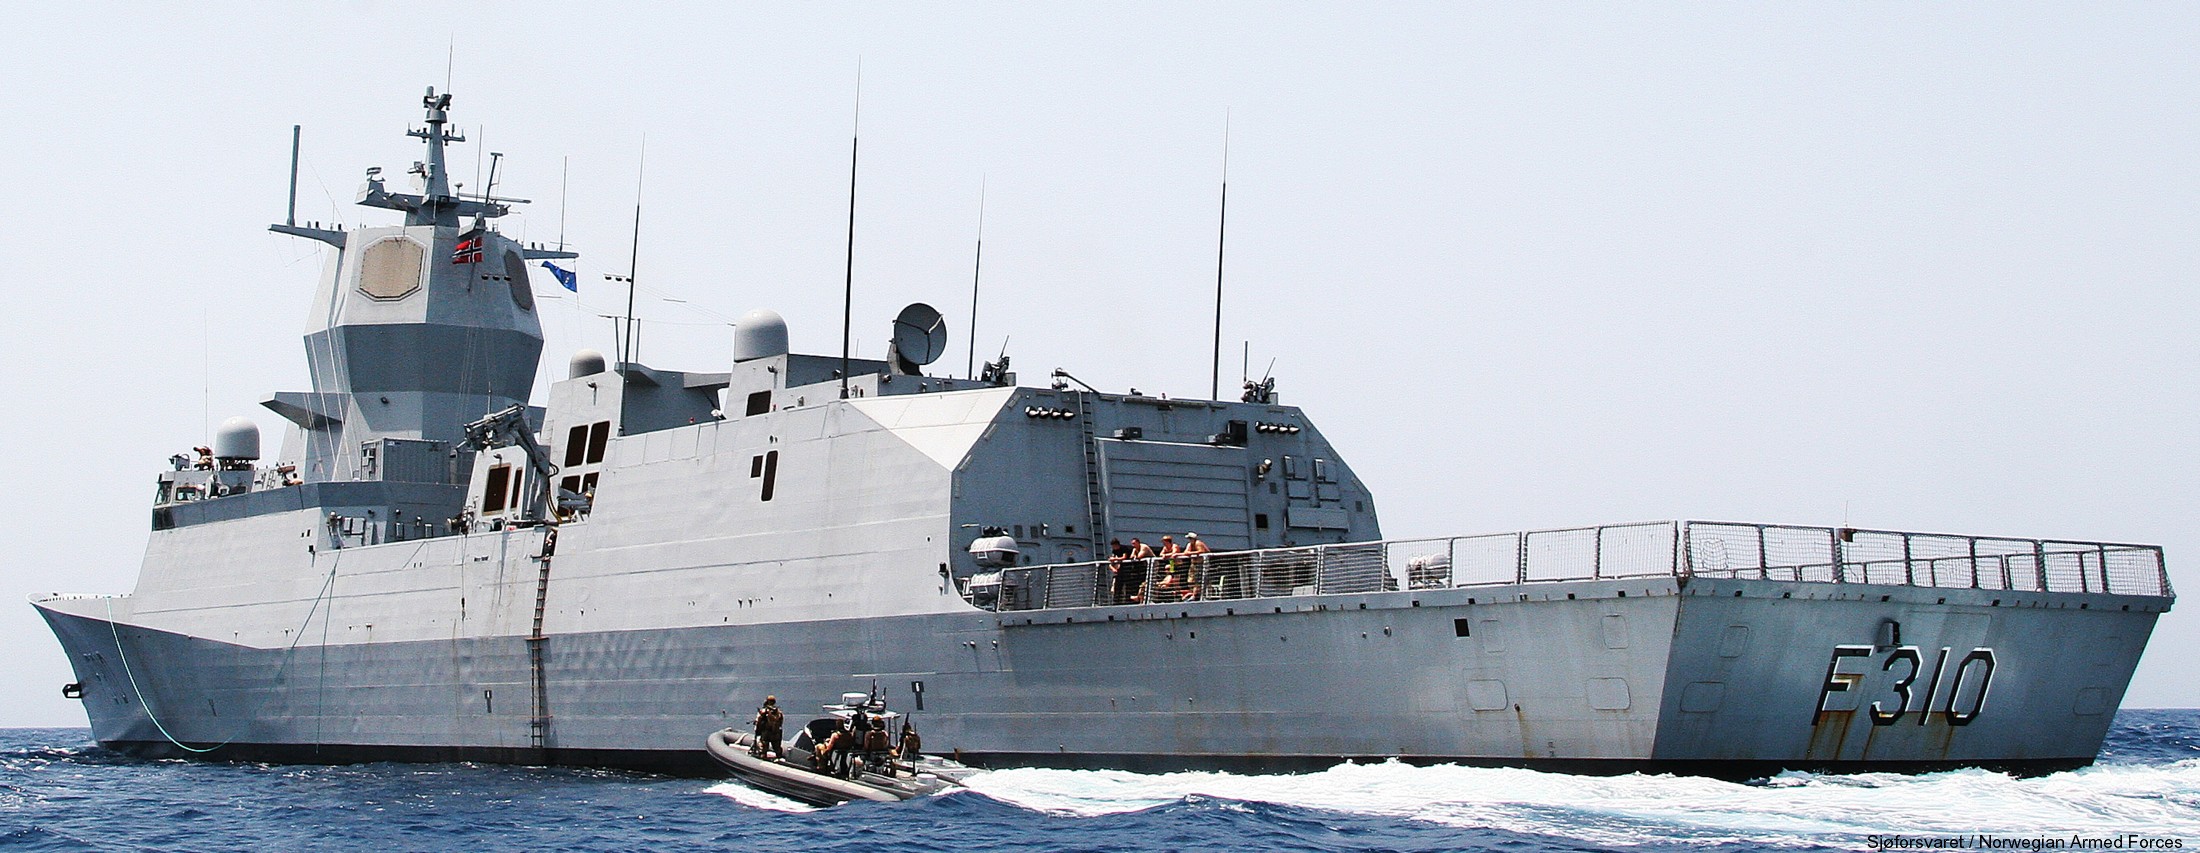 f-310 fridtjof nansen hnoms knm frigate royal norwegian navy sjoforsvaret 61